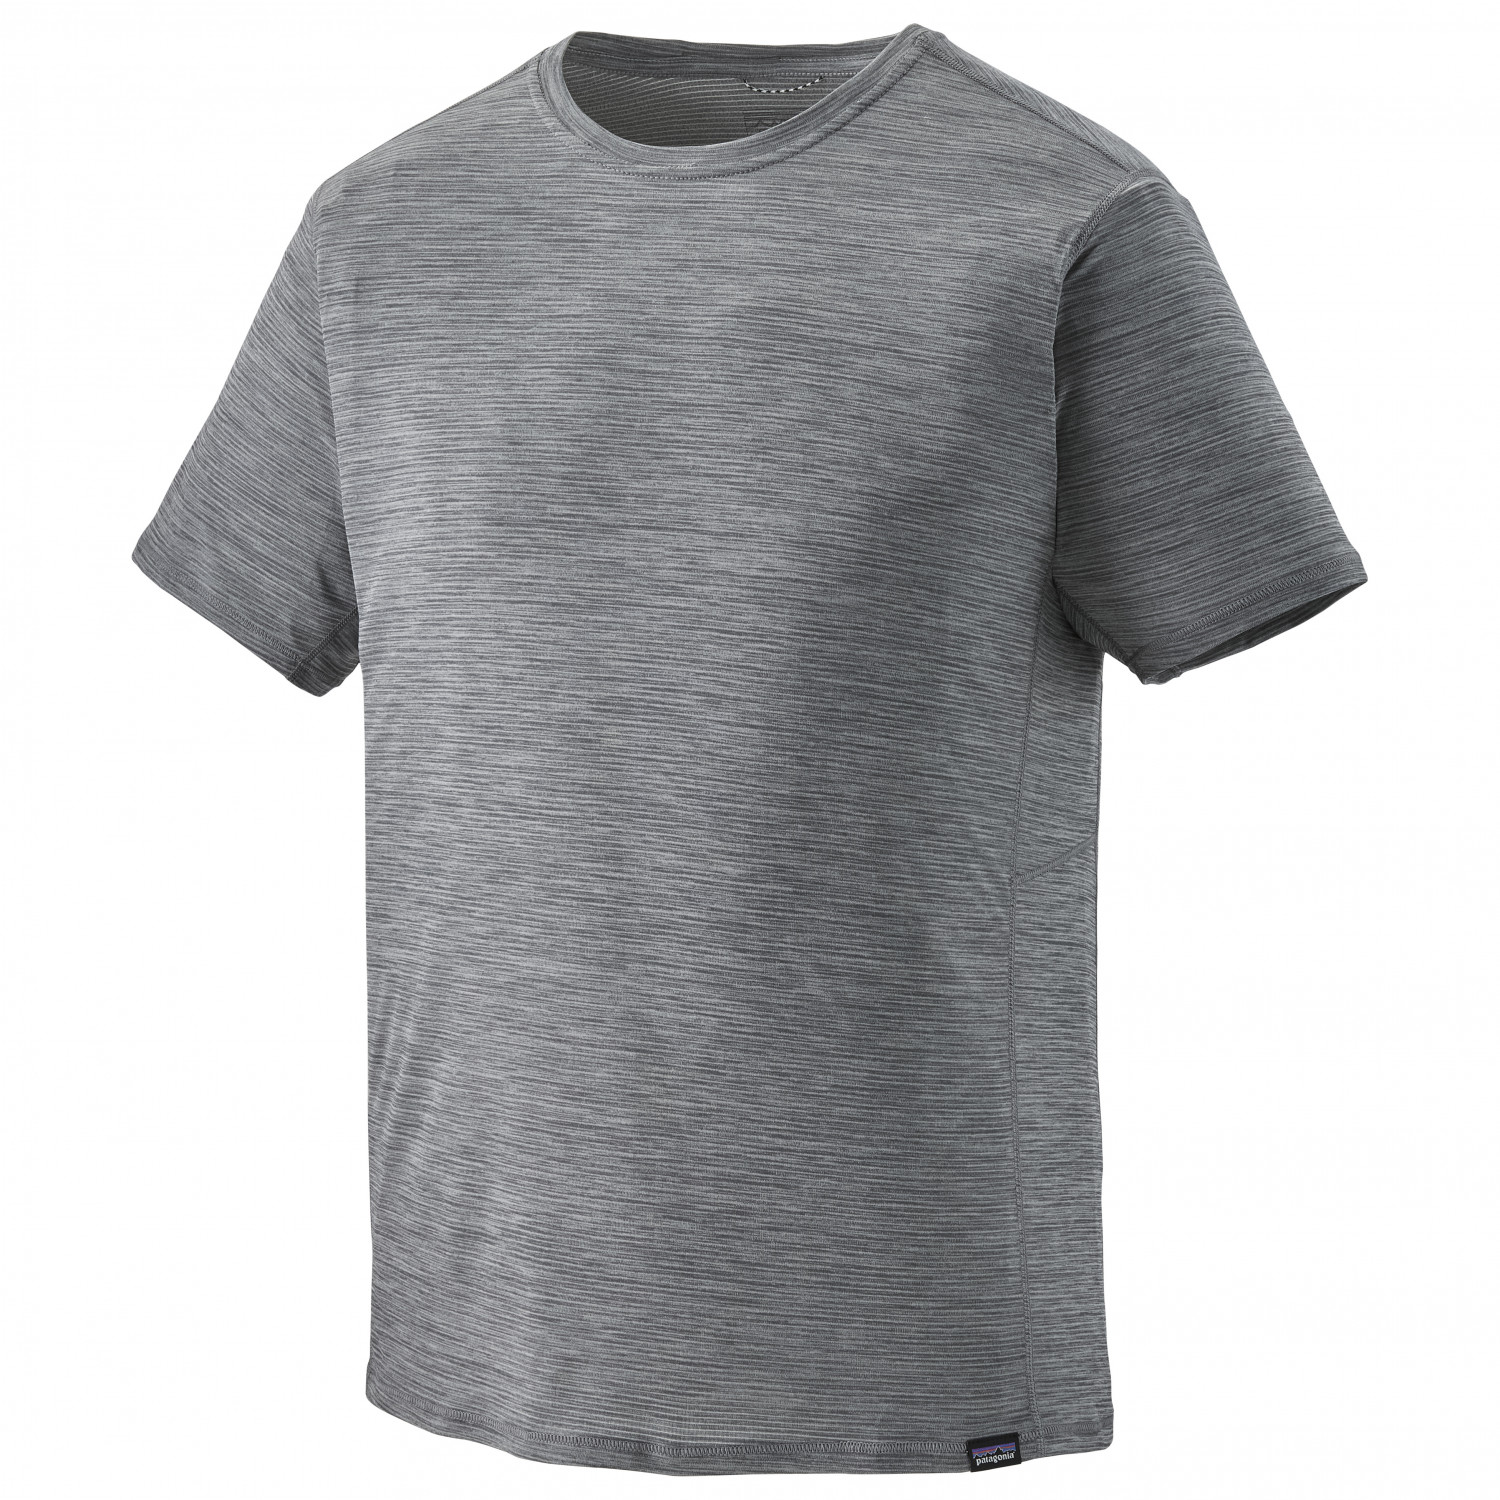 Функциональная рубашка Patagonia Cap Cool Lightweight Shirt, цвет Forge Grey/Feather Grey X Dye повседневная рубашка с длинными рукавами capilene cool – мужская patagonia цвет feather grey